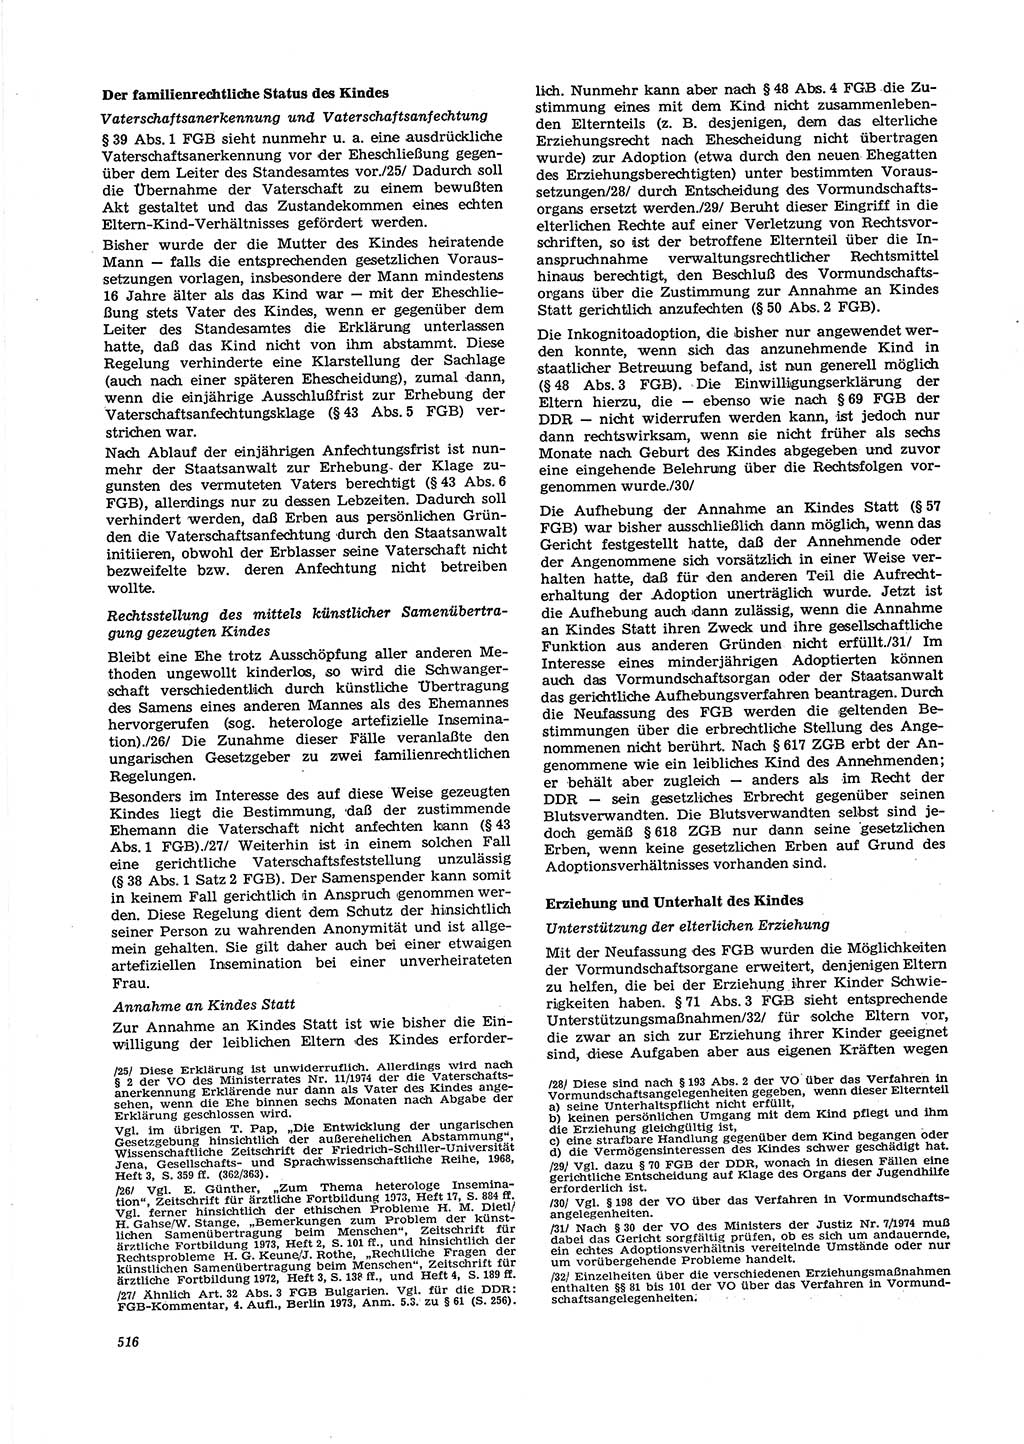 Neue Justiz (NJ), Zeitschrift für Recht und Rechtswissenschaft [Deutsche Demokratische Republik (DDR)], 29. Jahrgang 1975, Seite 516 (NJ DDR 1975, S. 516)